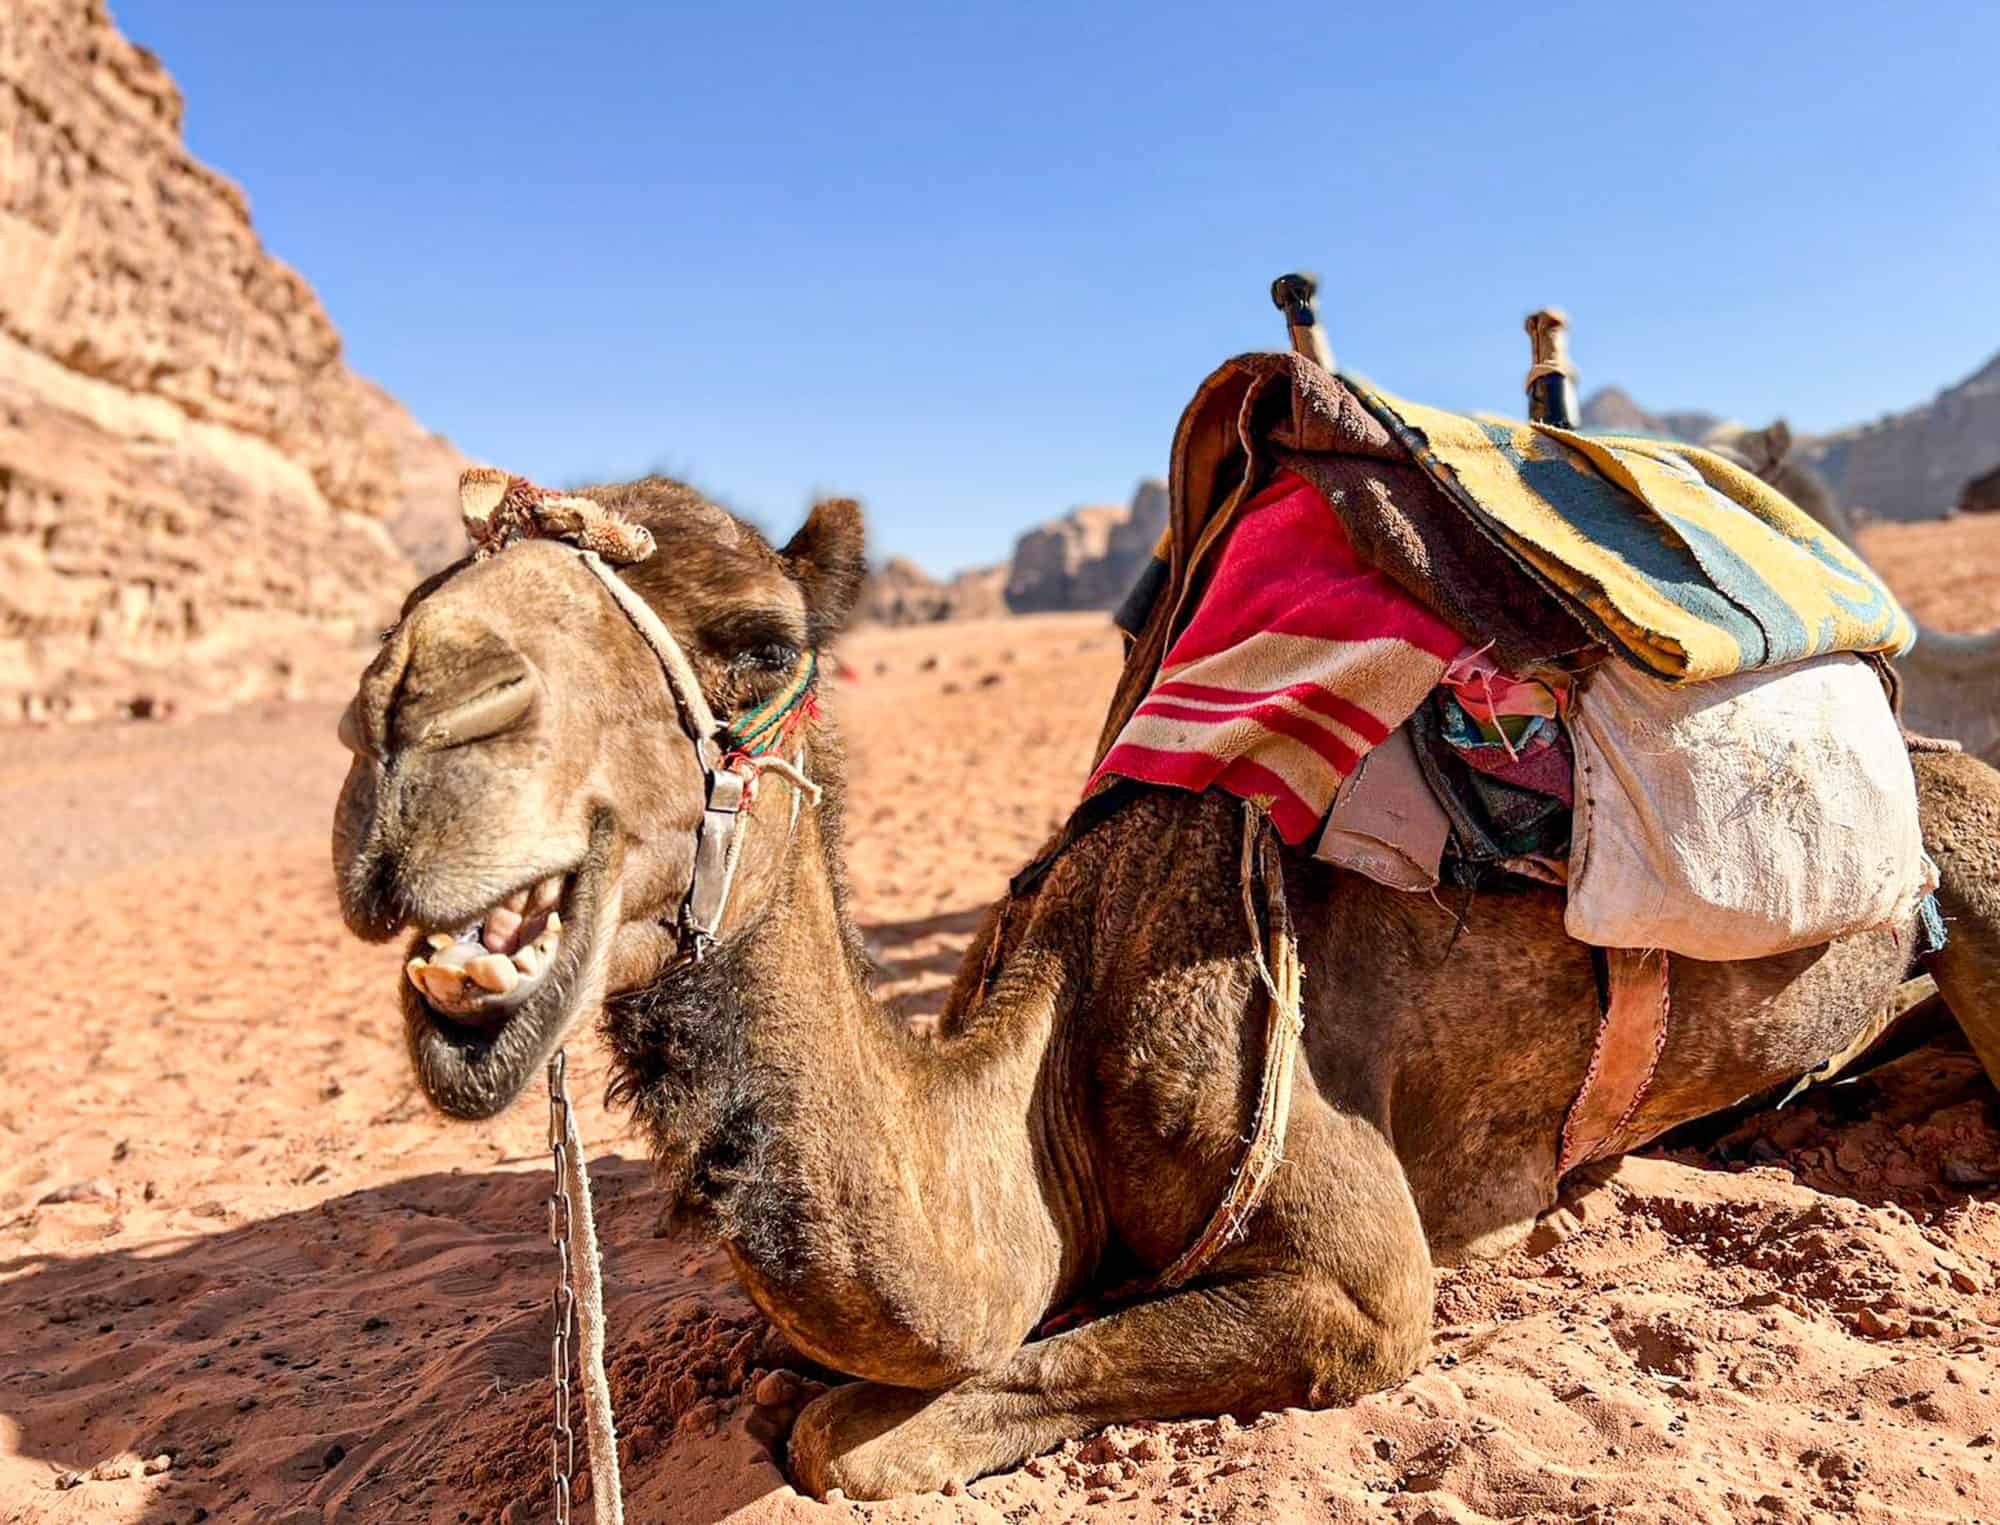 Jordan - Wadi Rum - Camel